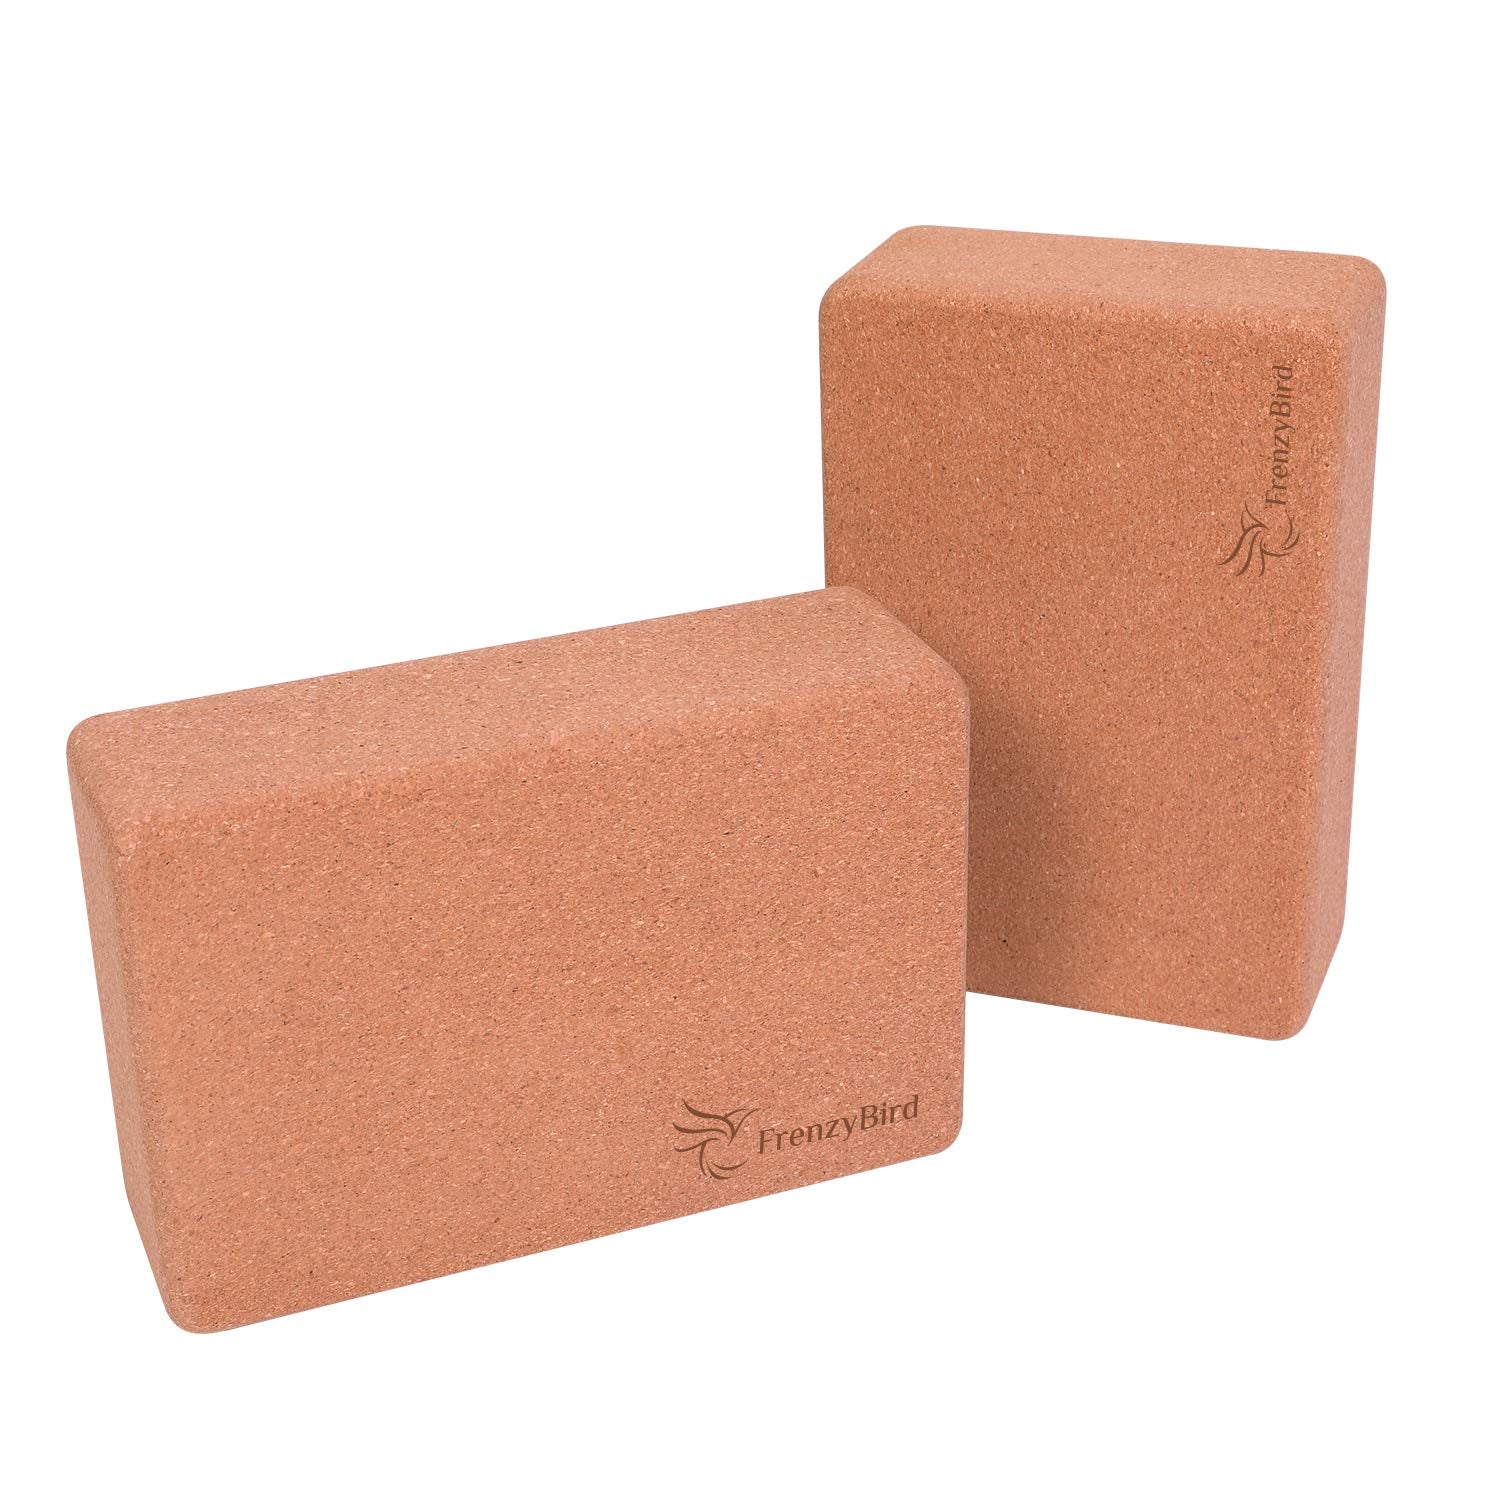 Cork Yoga Block 2 Pack Plus Strap Cork Yoga Bricks Natural Eco